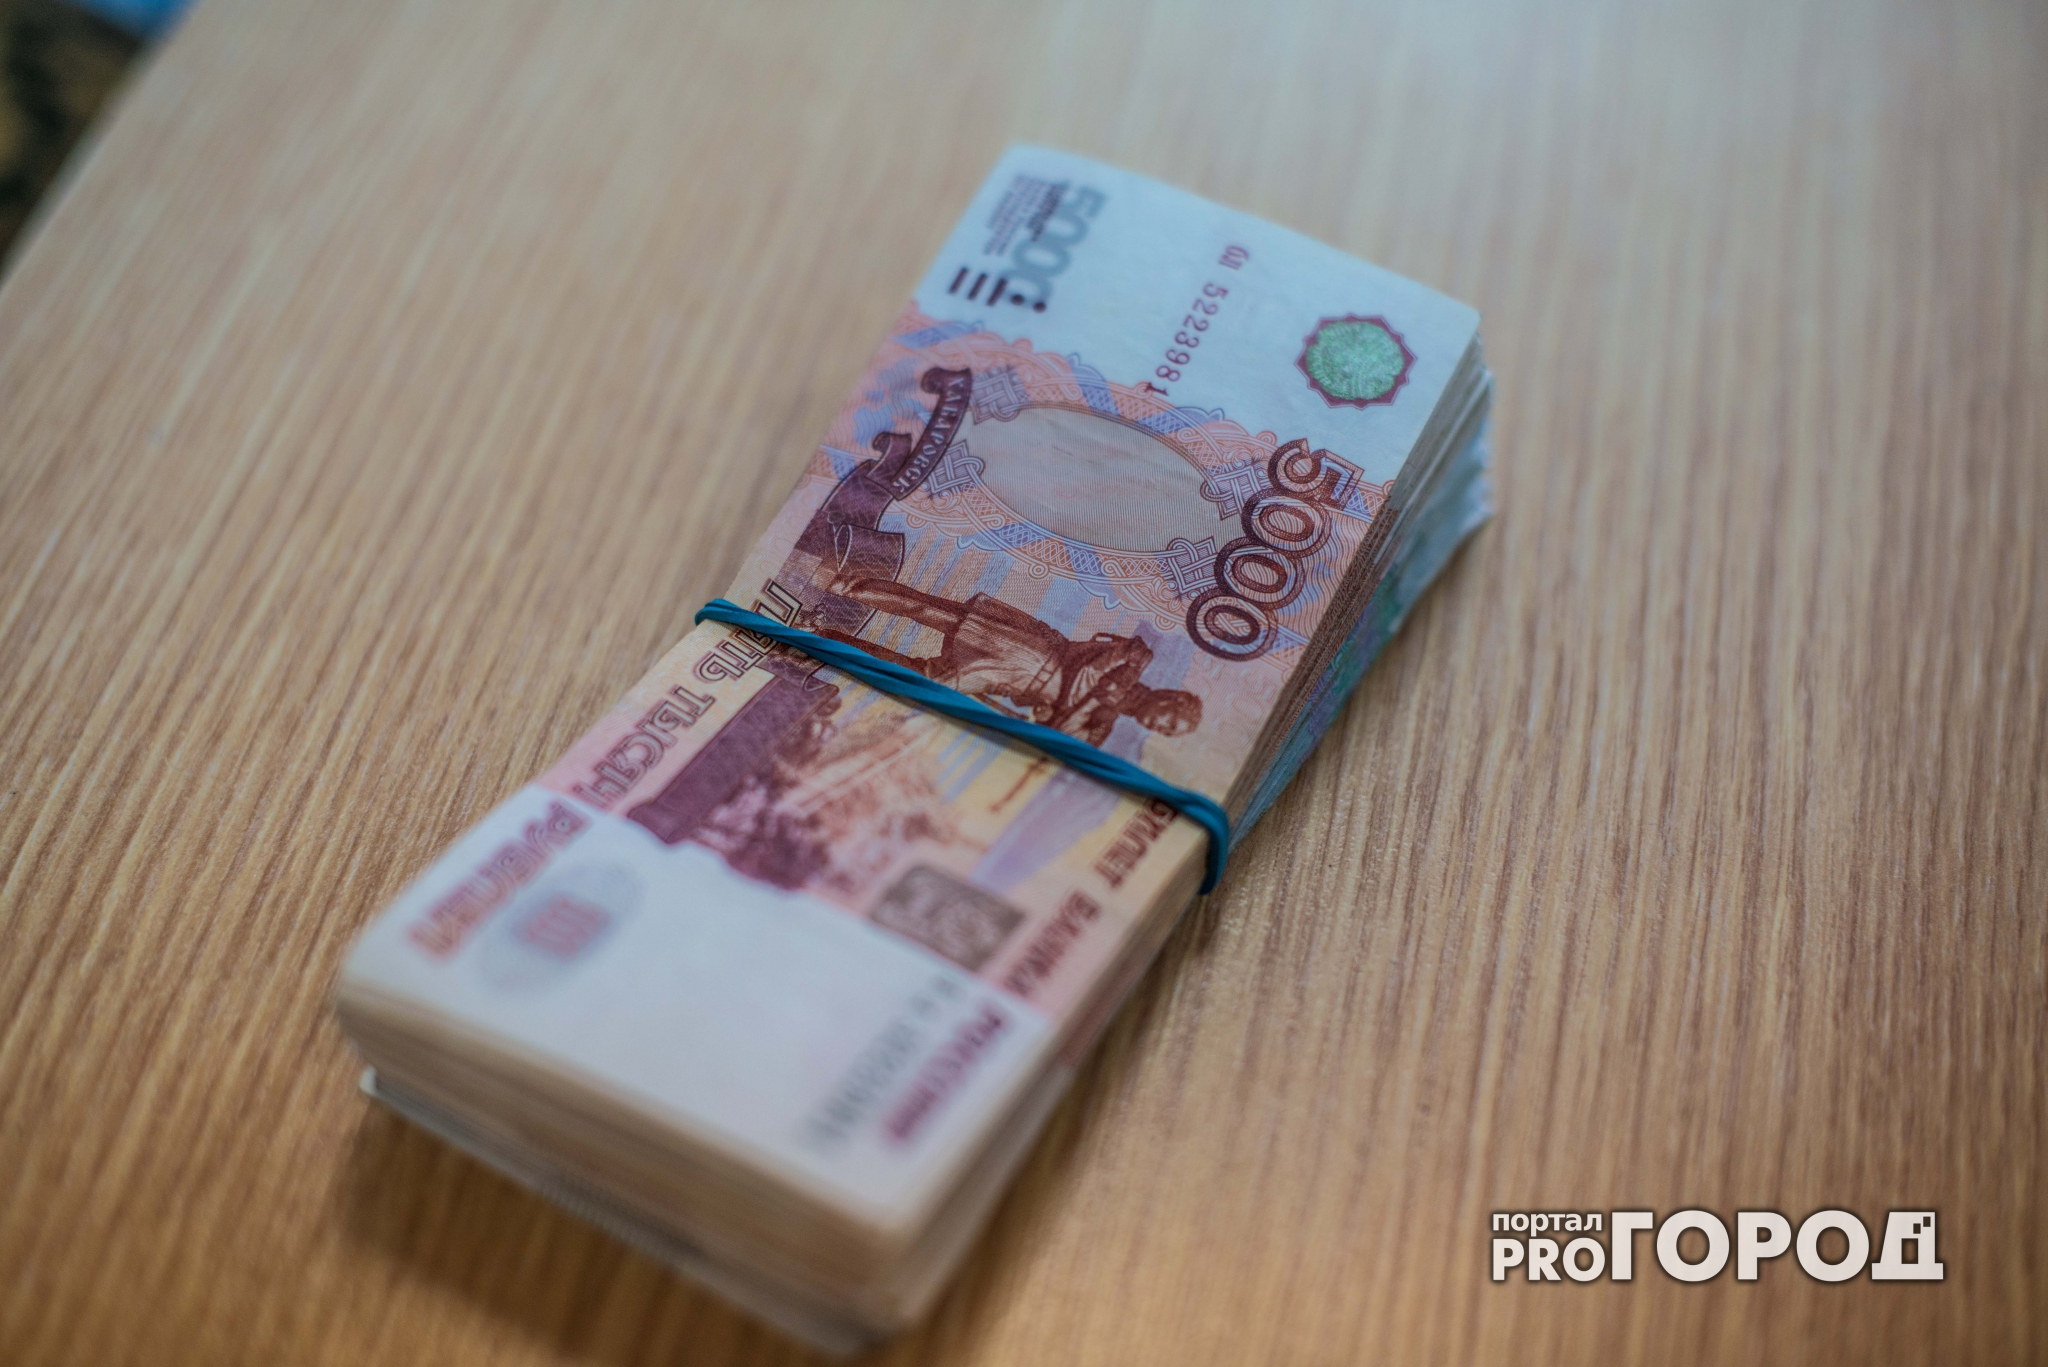 Нижегородская компания задолжала сотрудникам свыше 700 тысяч рублей